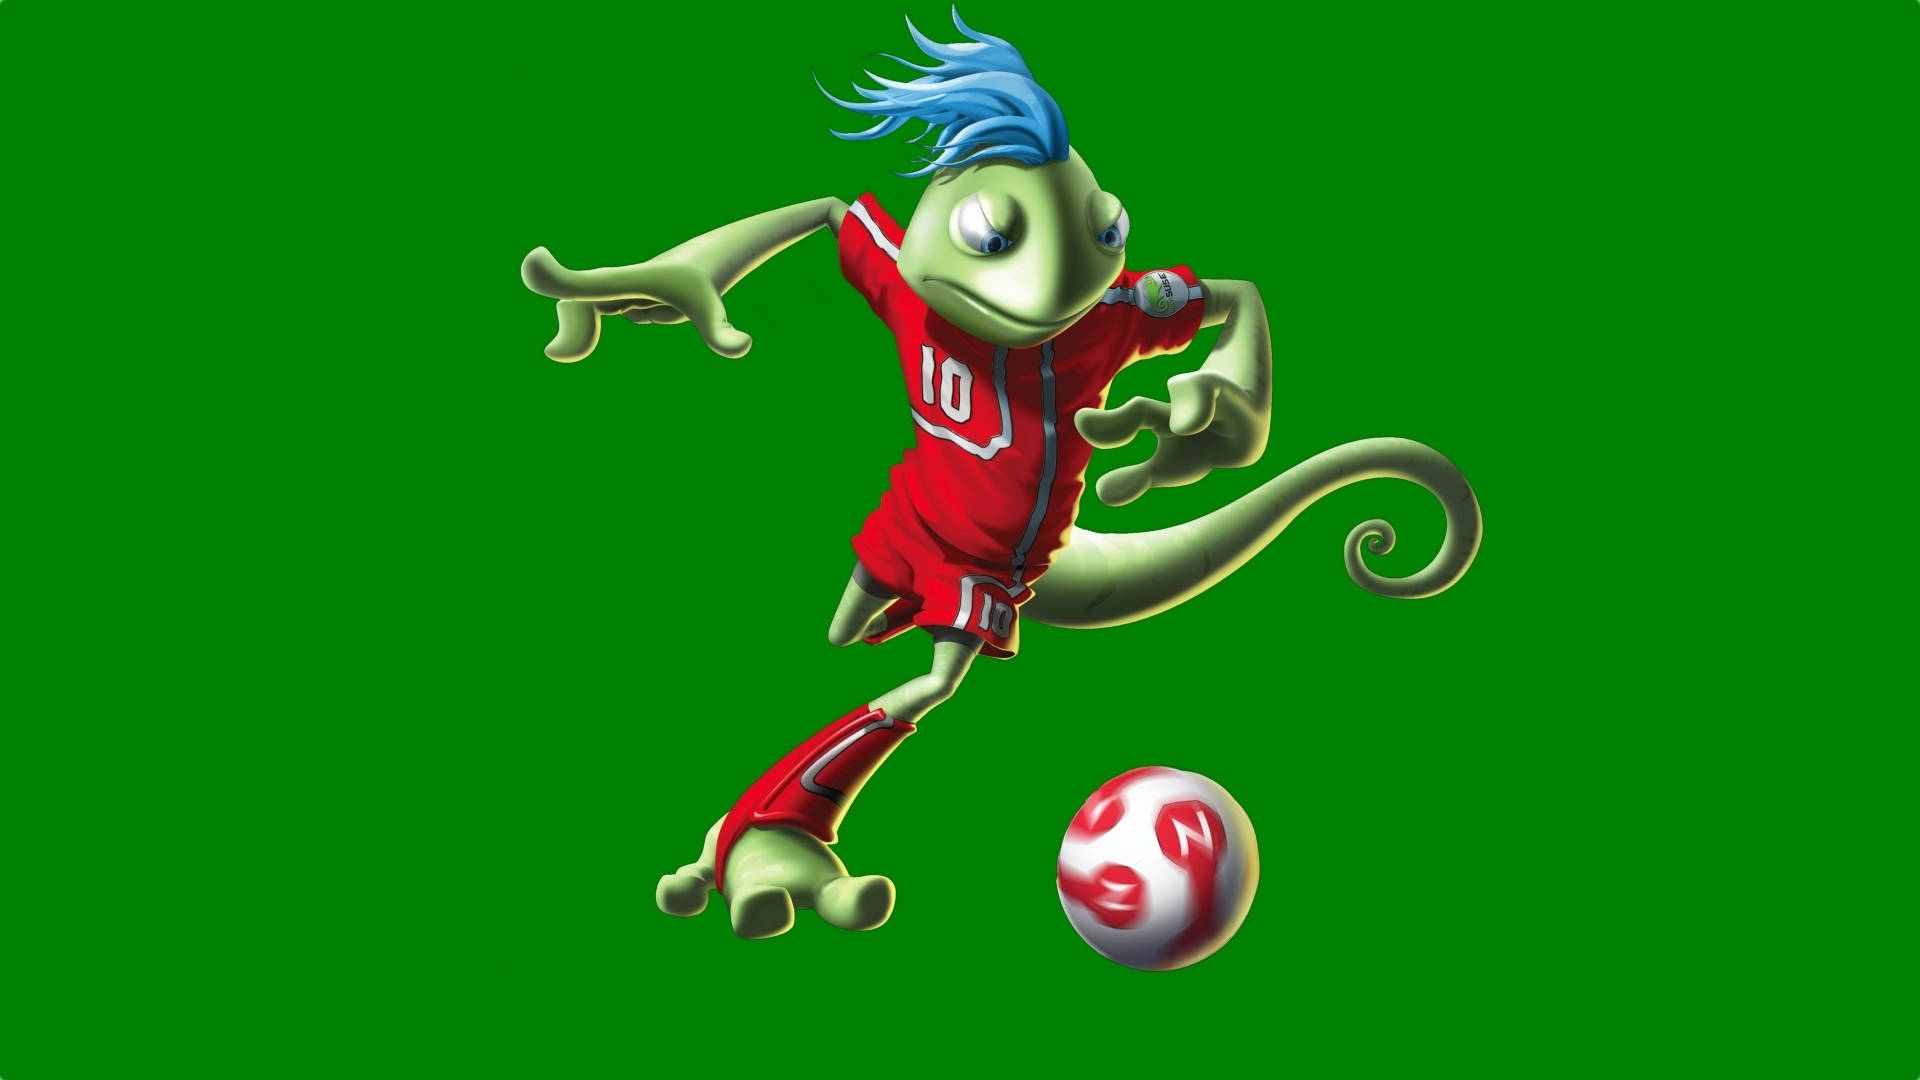 Cool Soccer Lizard Mascot